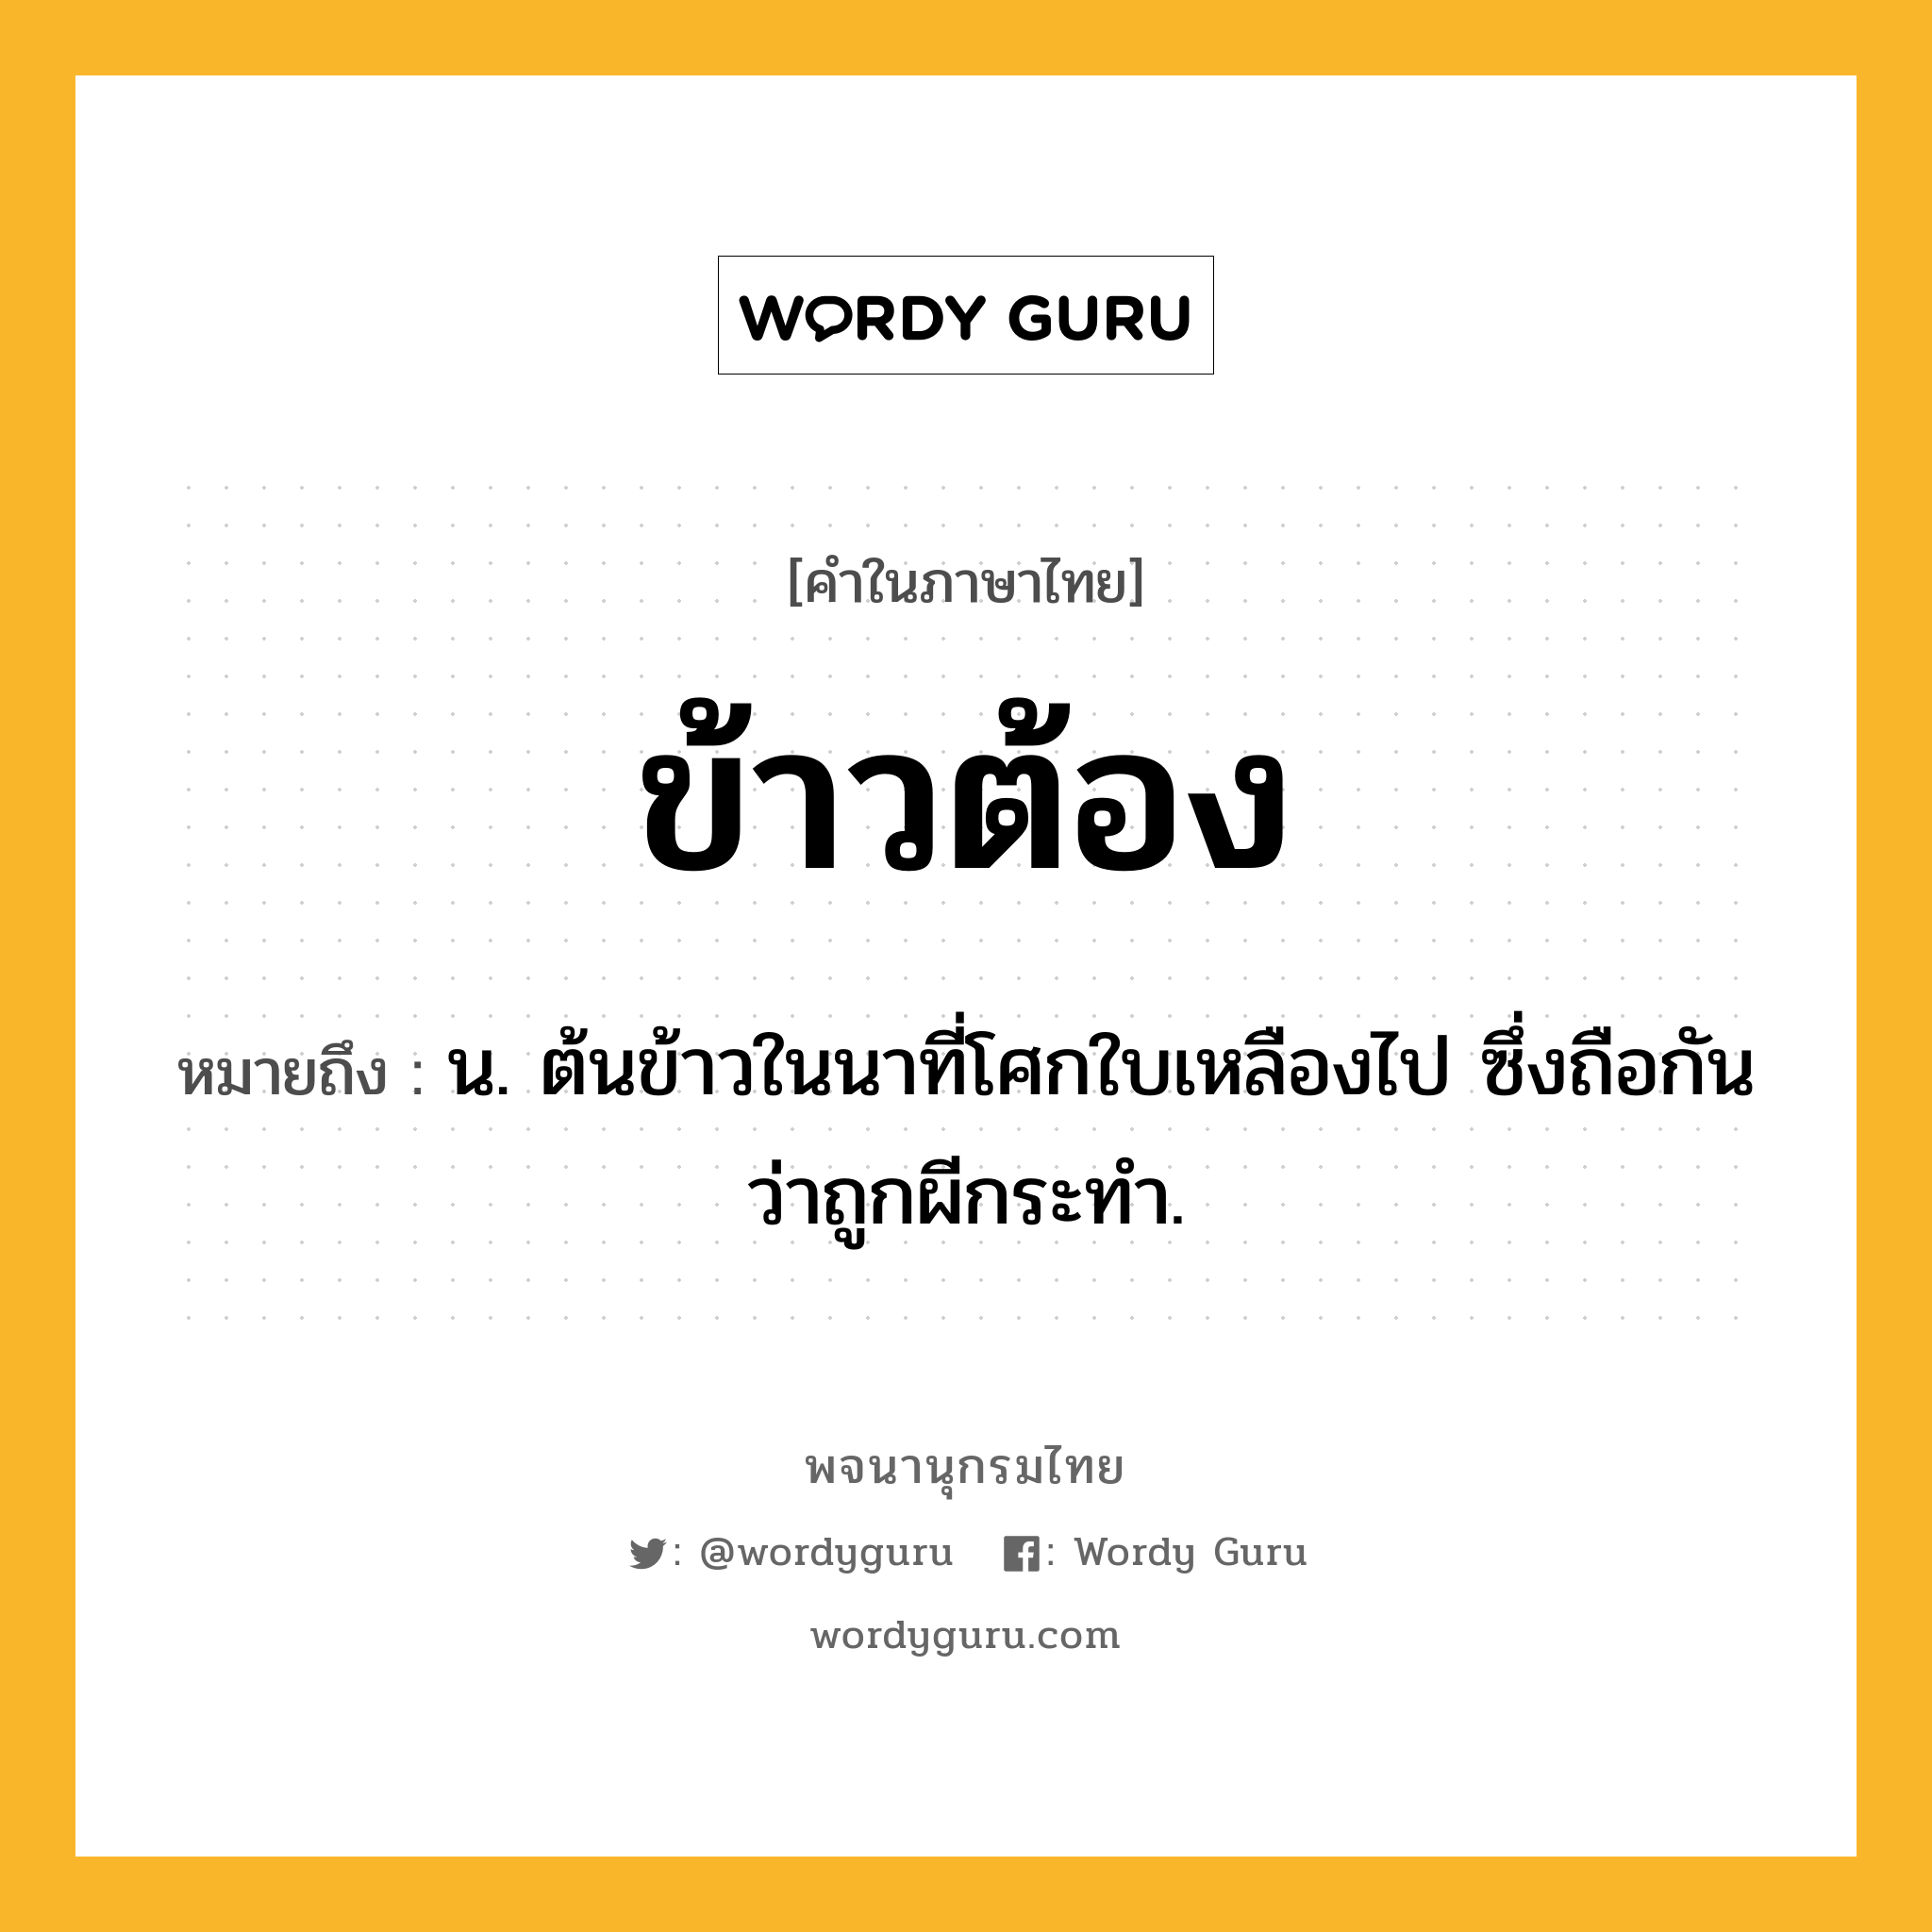 ข้าวต้อง หมายถึงอะไร?, คำในภาษาไทย ข้าวต้อง หมายถึง น. ต้นข้าวในนาที่โศกใบเหลืองไป ซึ่งถือกันว่าถูกผีกระทำ.